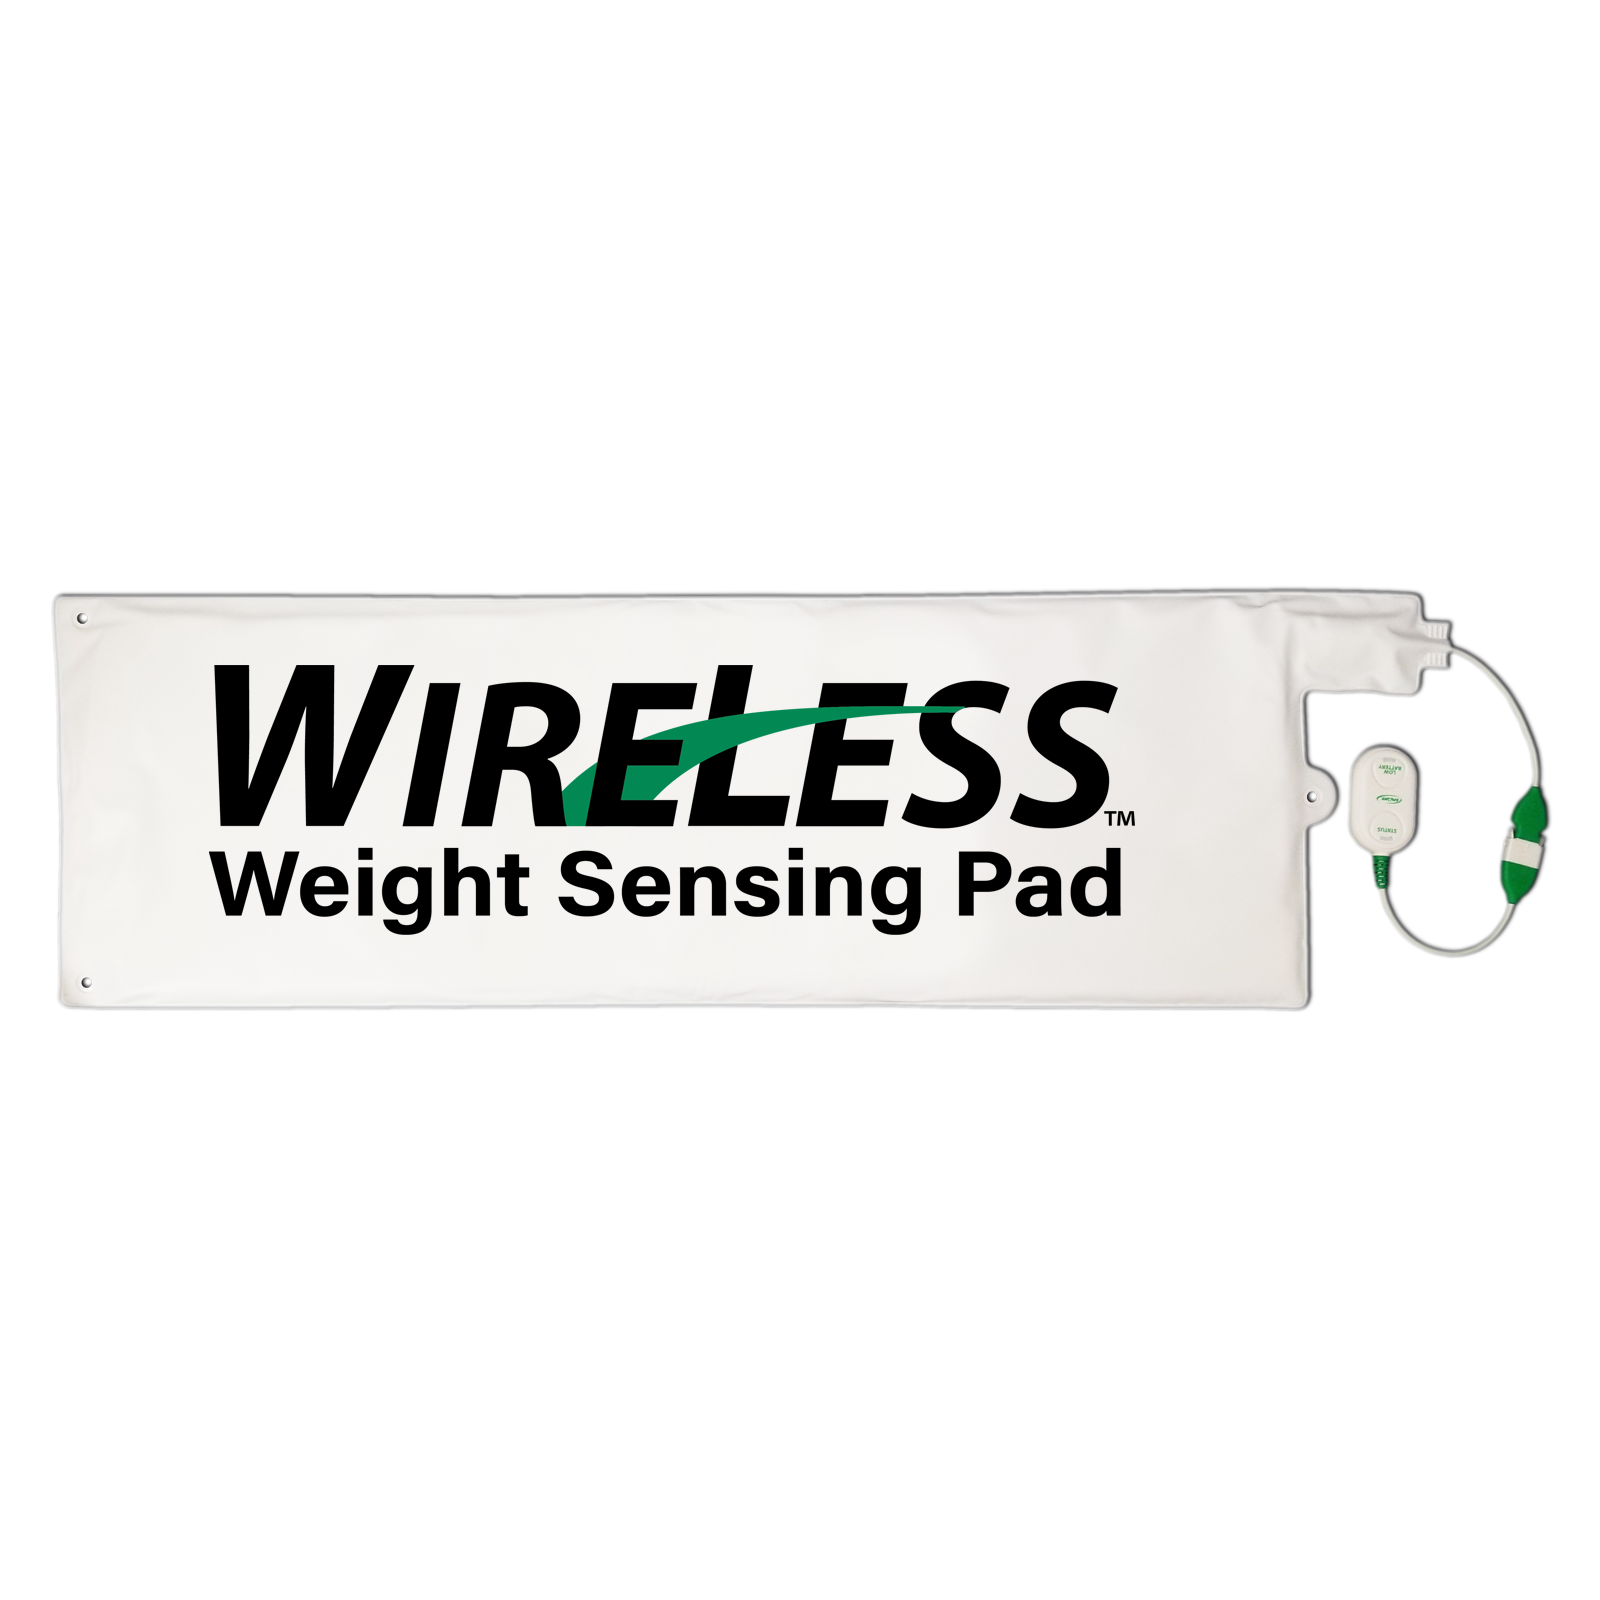 Wireless_Bed_Pad_Med_7606c0b6-84c1-4f0c-ad8e-e0bd5ecd8535.png